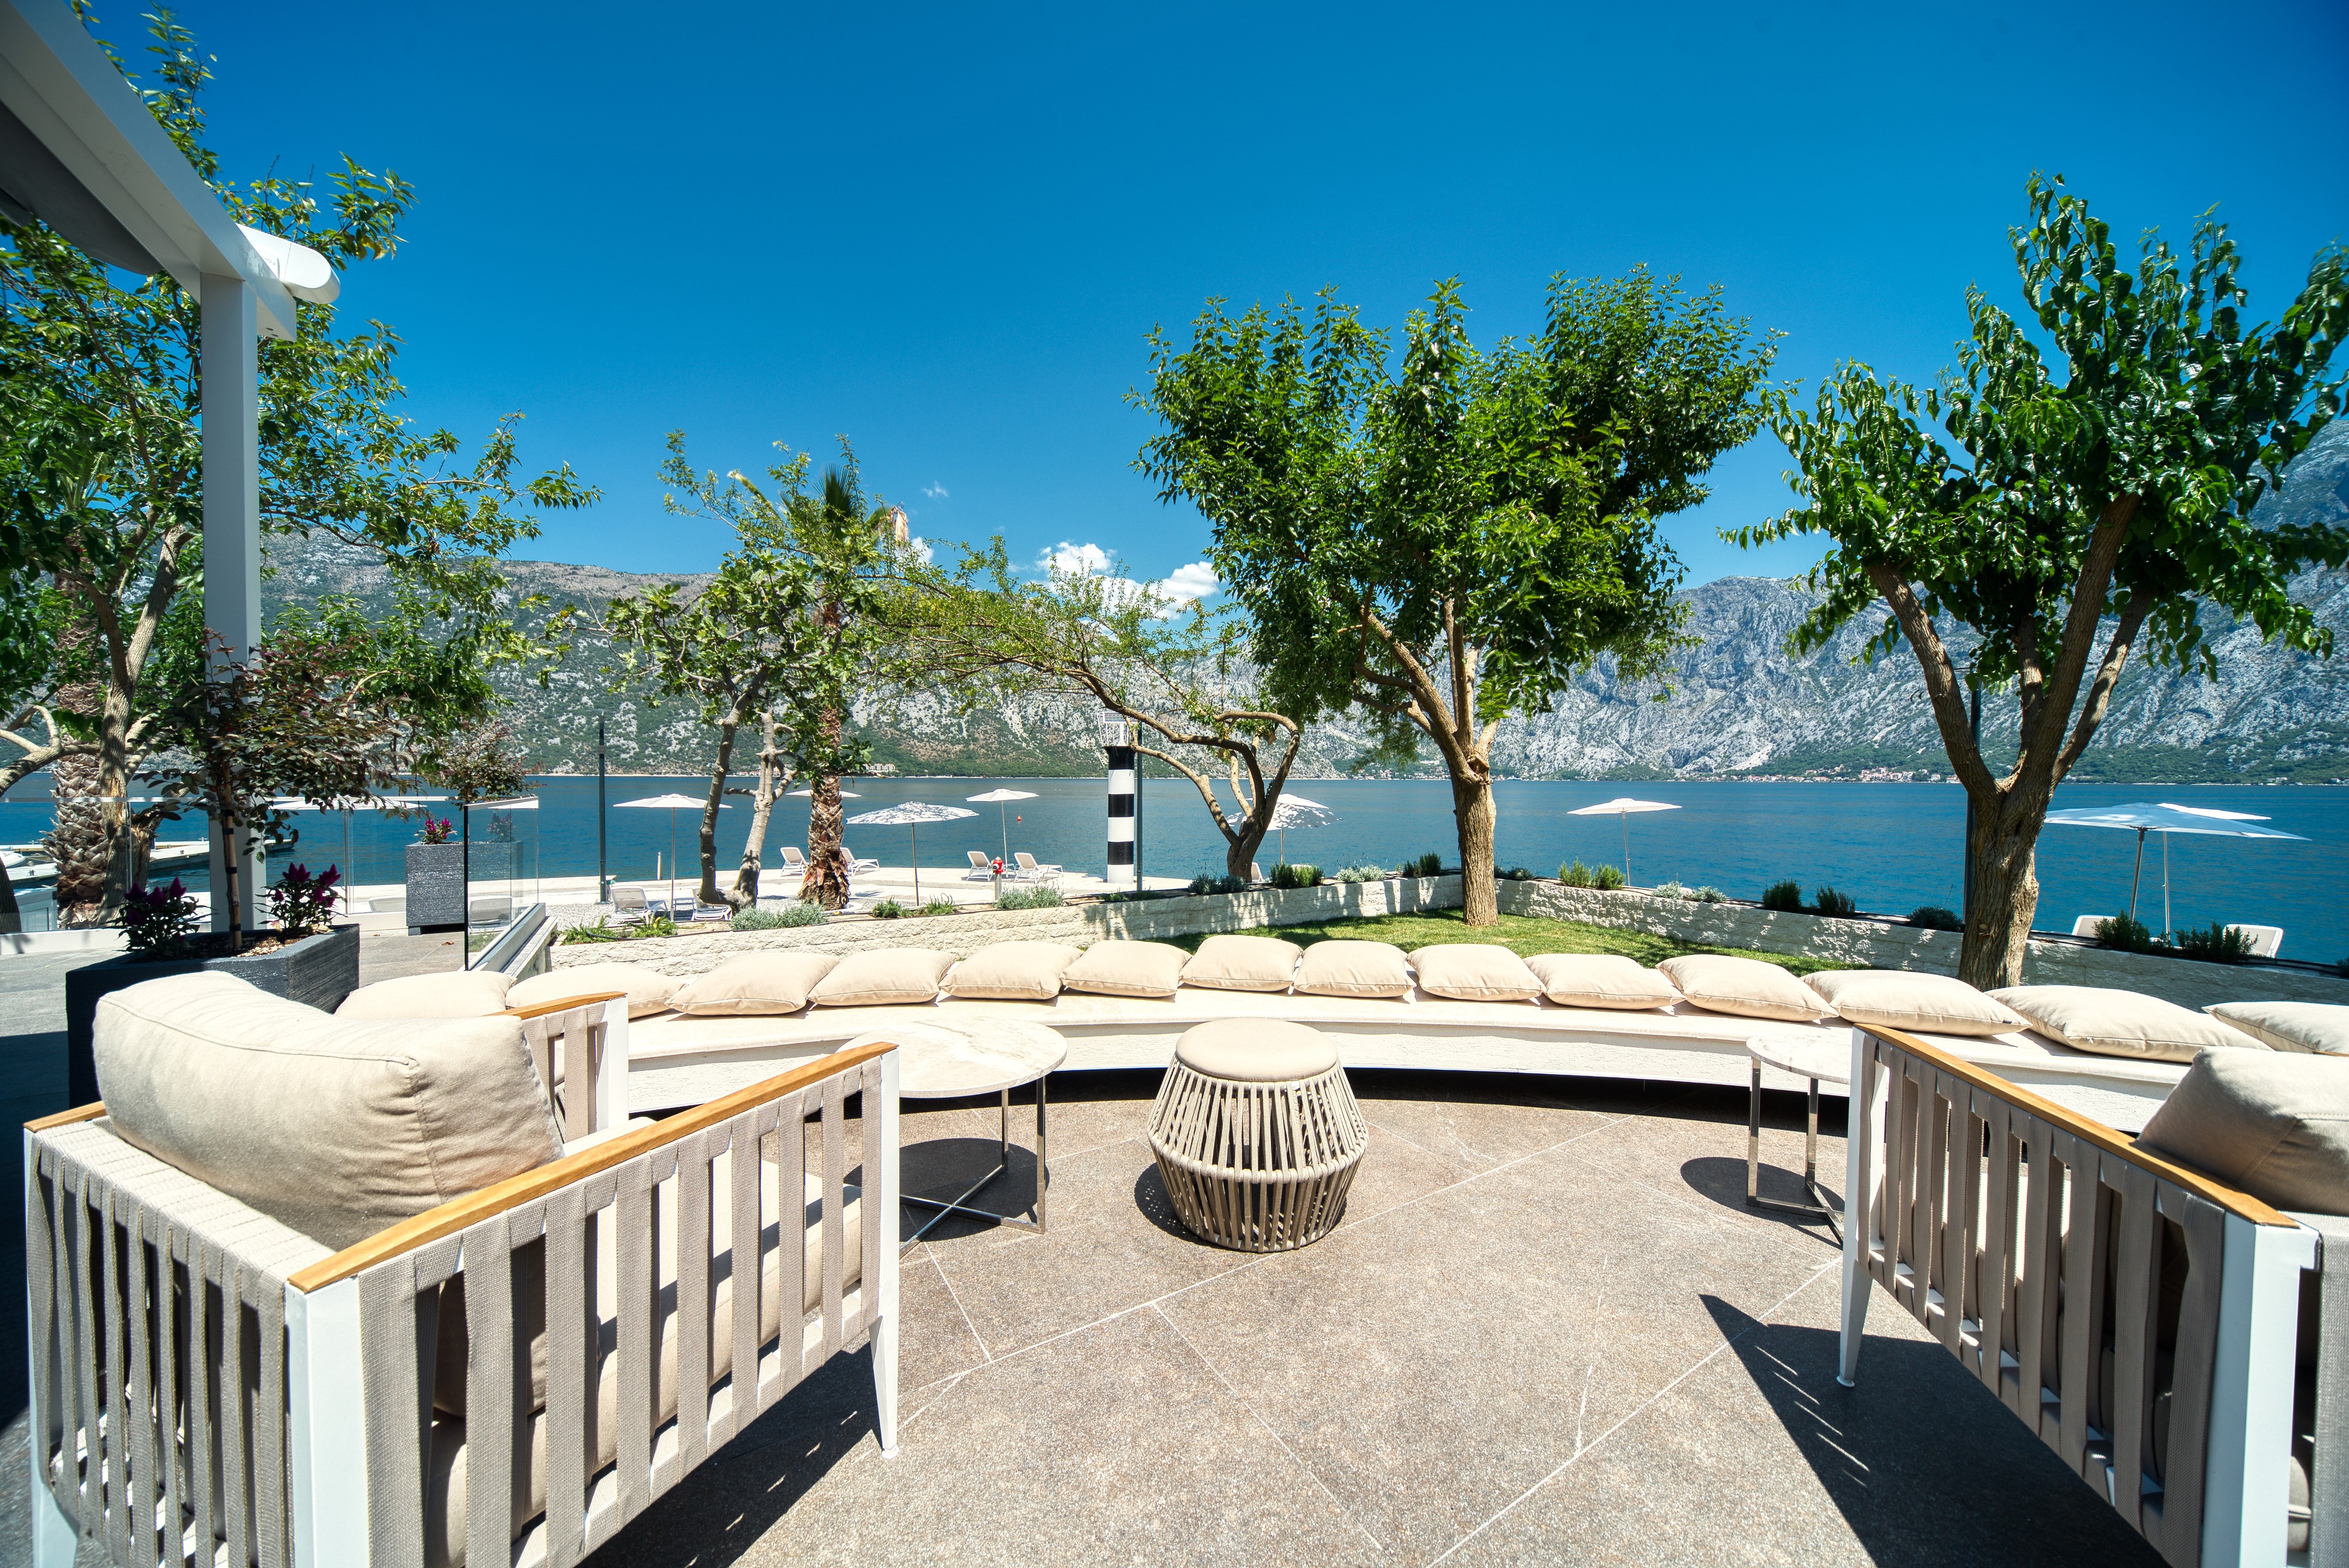 Blue Kotor Bay Premium Spa Resort Lighthouse Restaurant Lounge Terrace_25-03-2022-103915.jpg